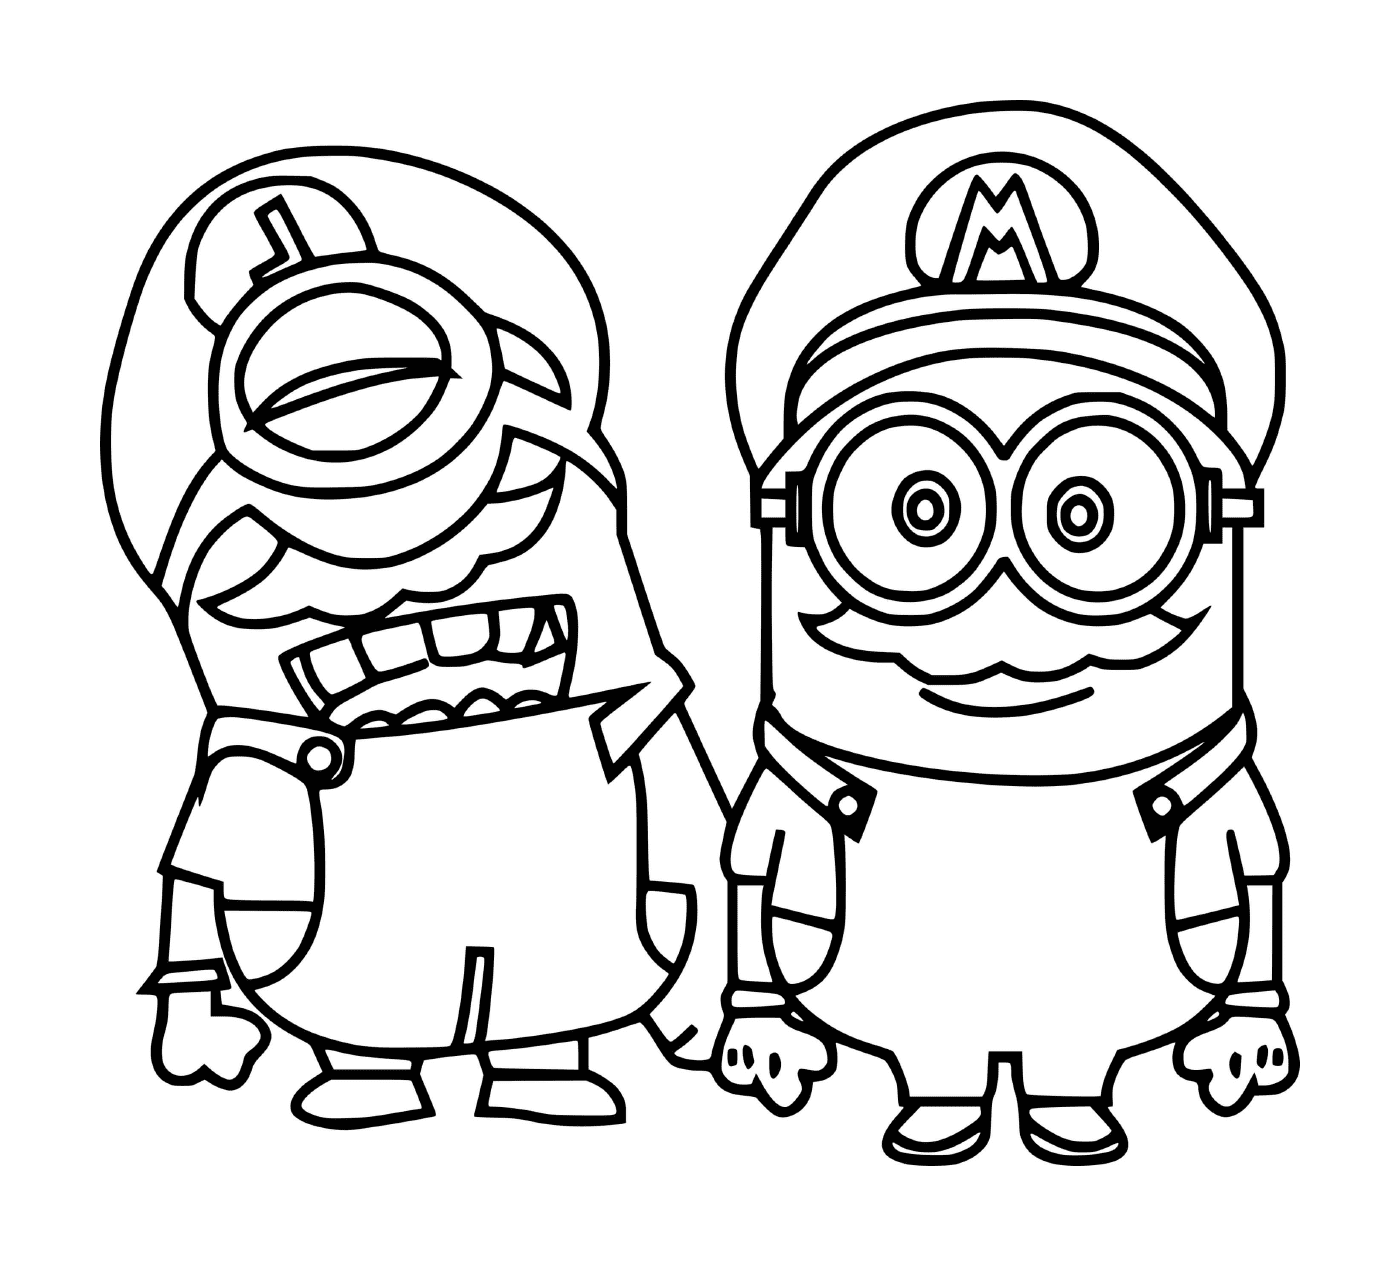  Mario Minions juntos 